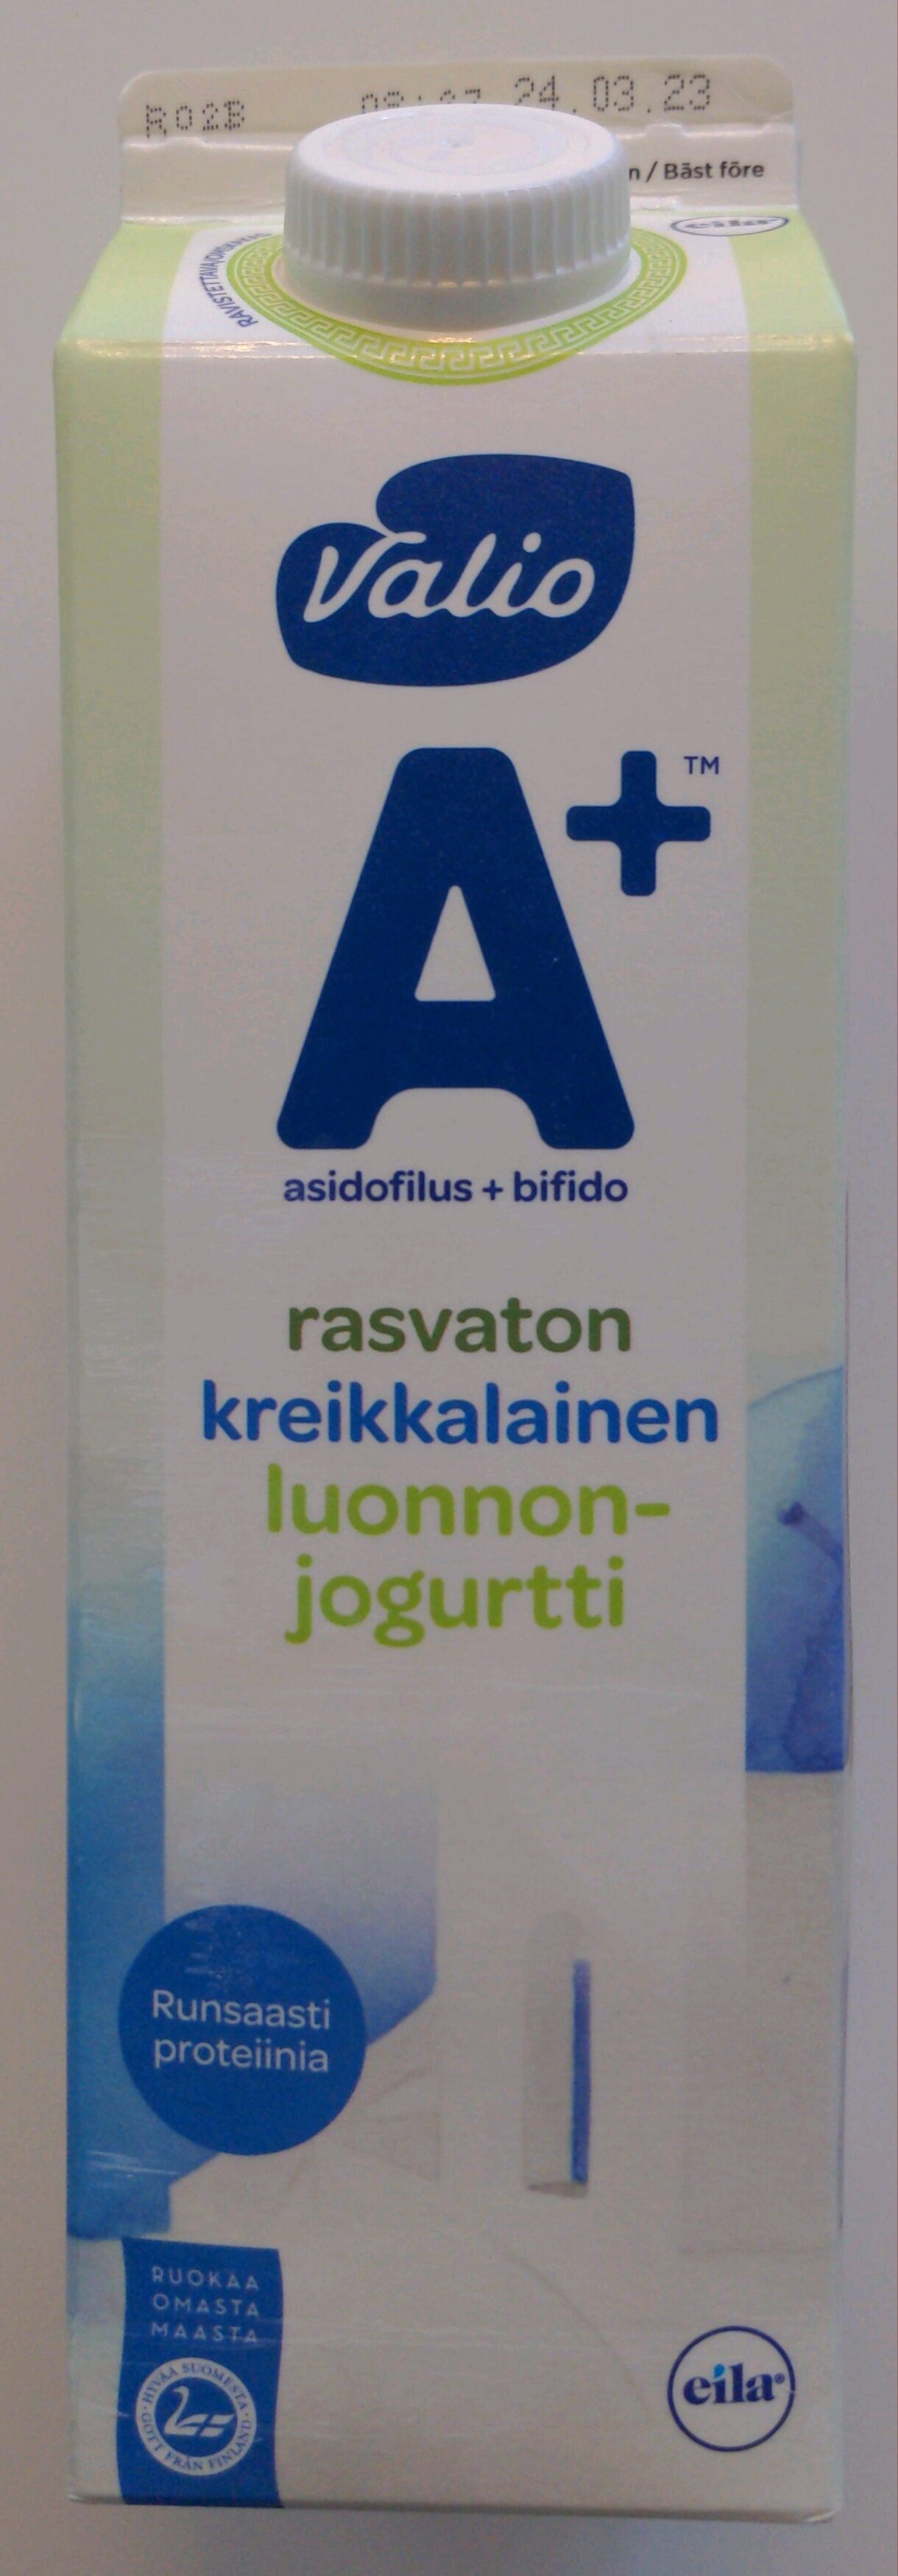 A+ rasvaton kreikkalainen luonnonjogurtti - Product - fi